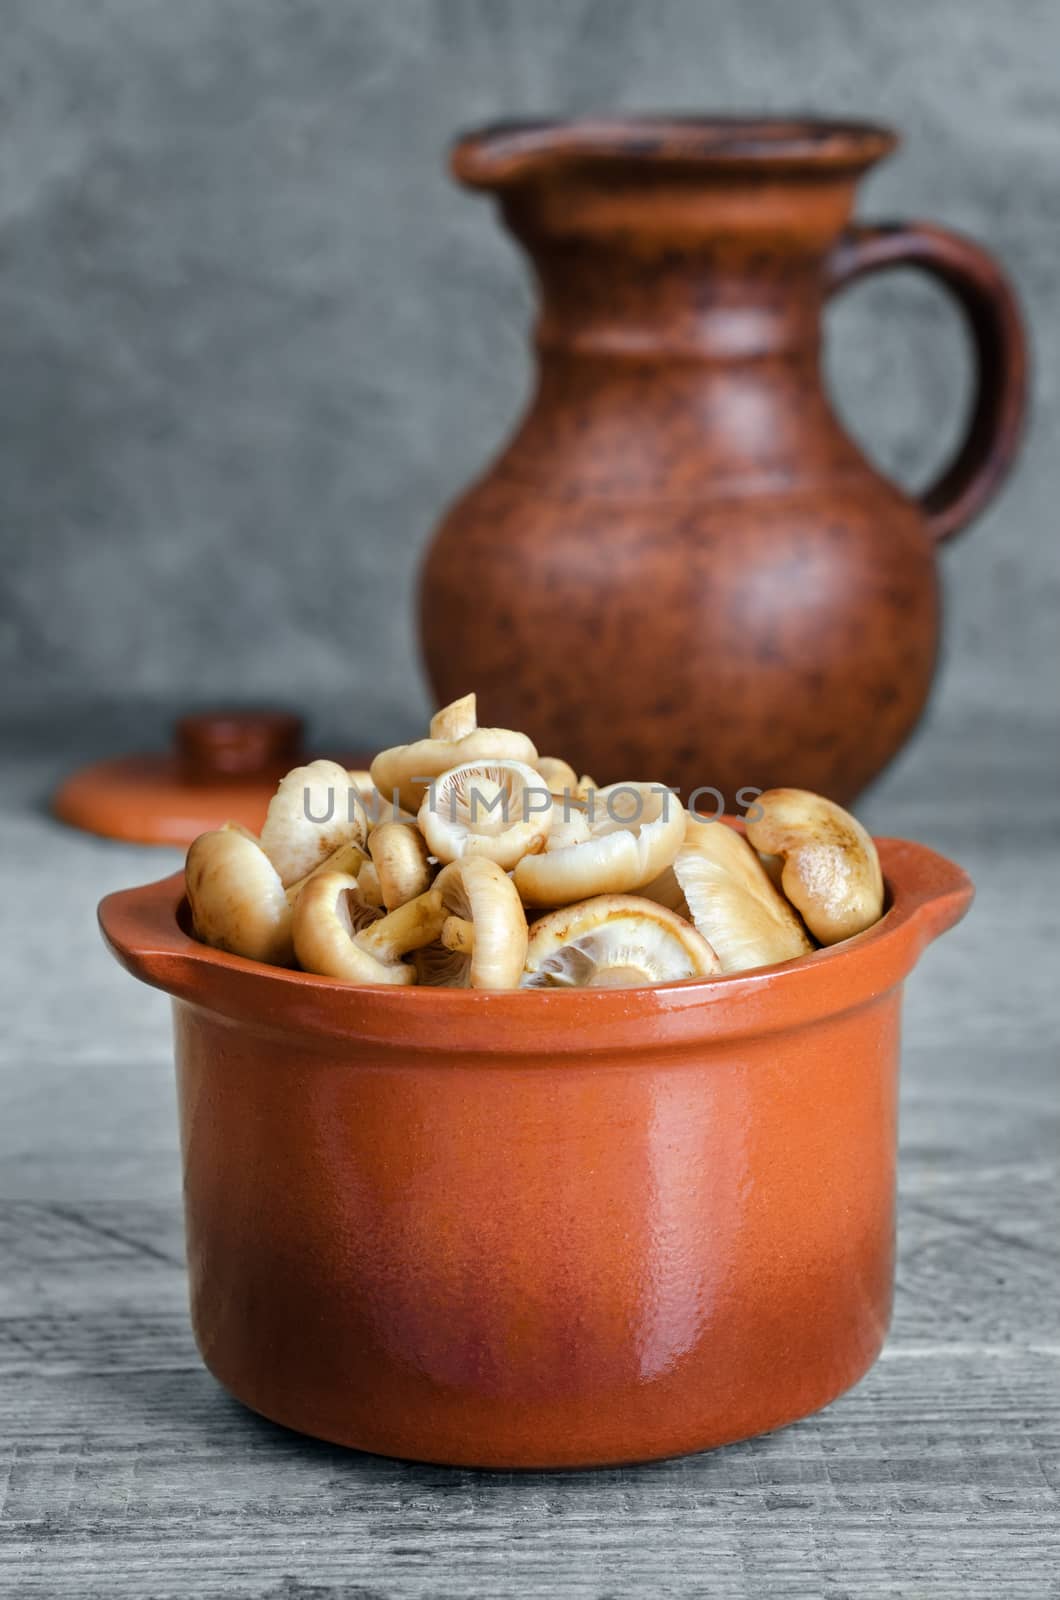 Raw wild mushrooms in a ceramic pot by Gaina